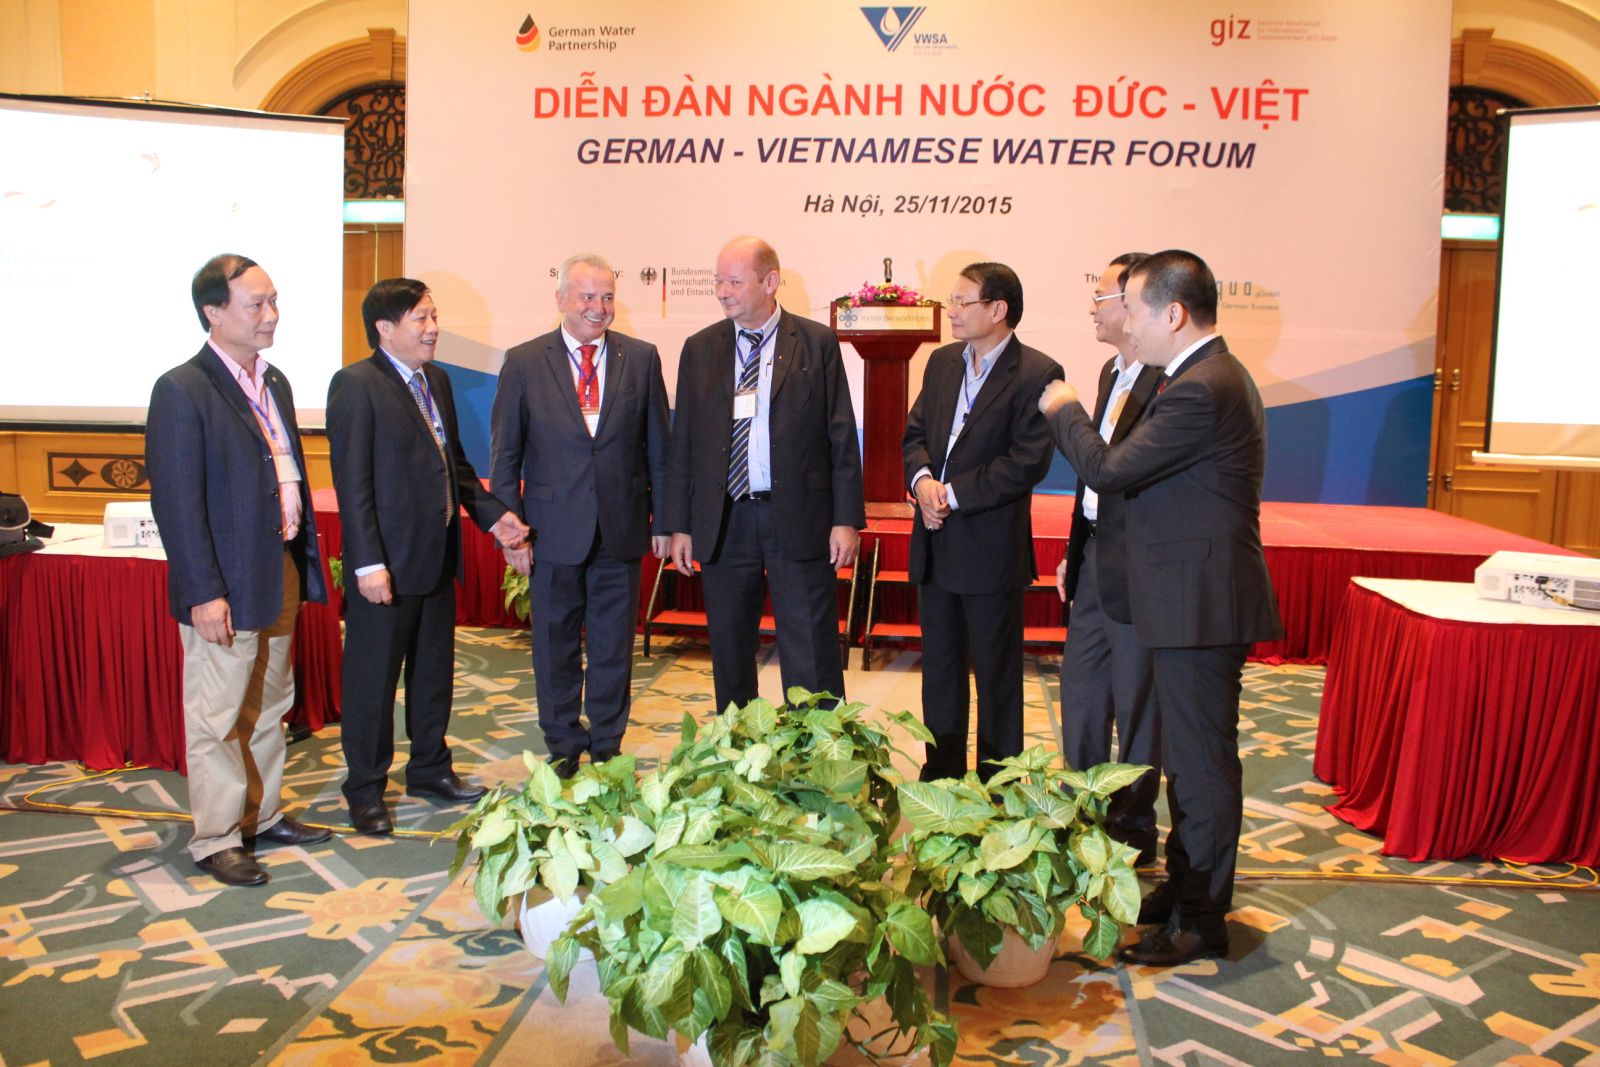 Diễn đàn ngành nước Đức - Việt (25.11.2015)